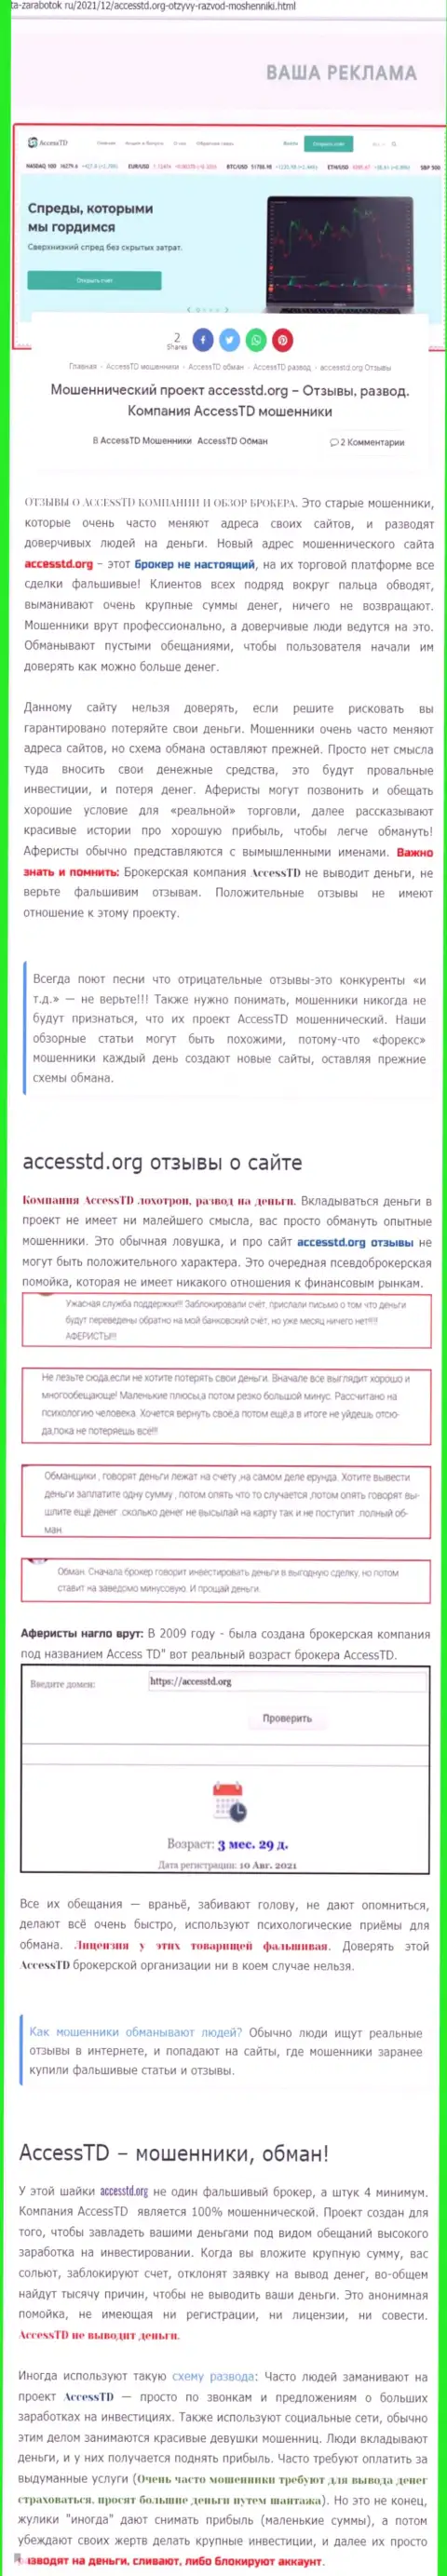 AccessTD Org - это МОШЕННИКИ ! Обзор деятельности организации и комментарии пострадавших